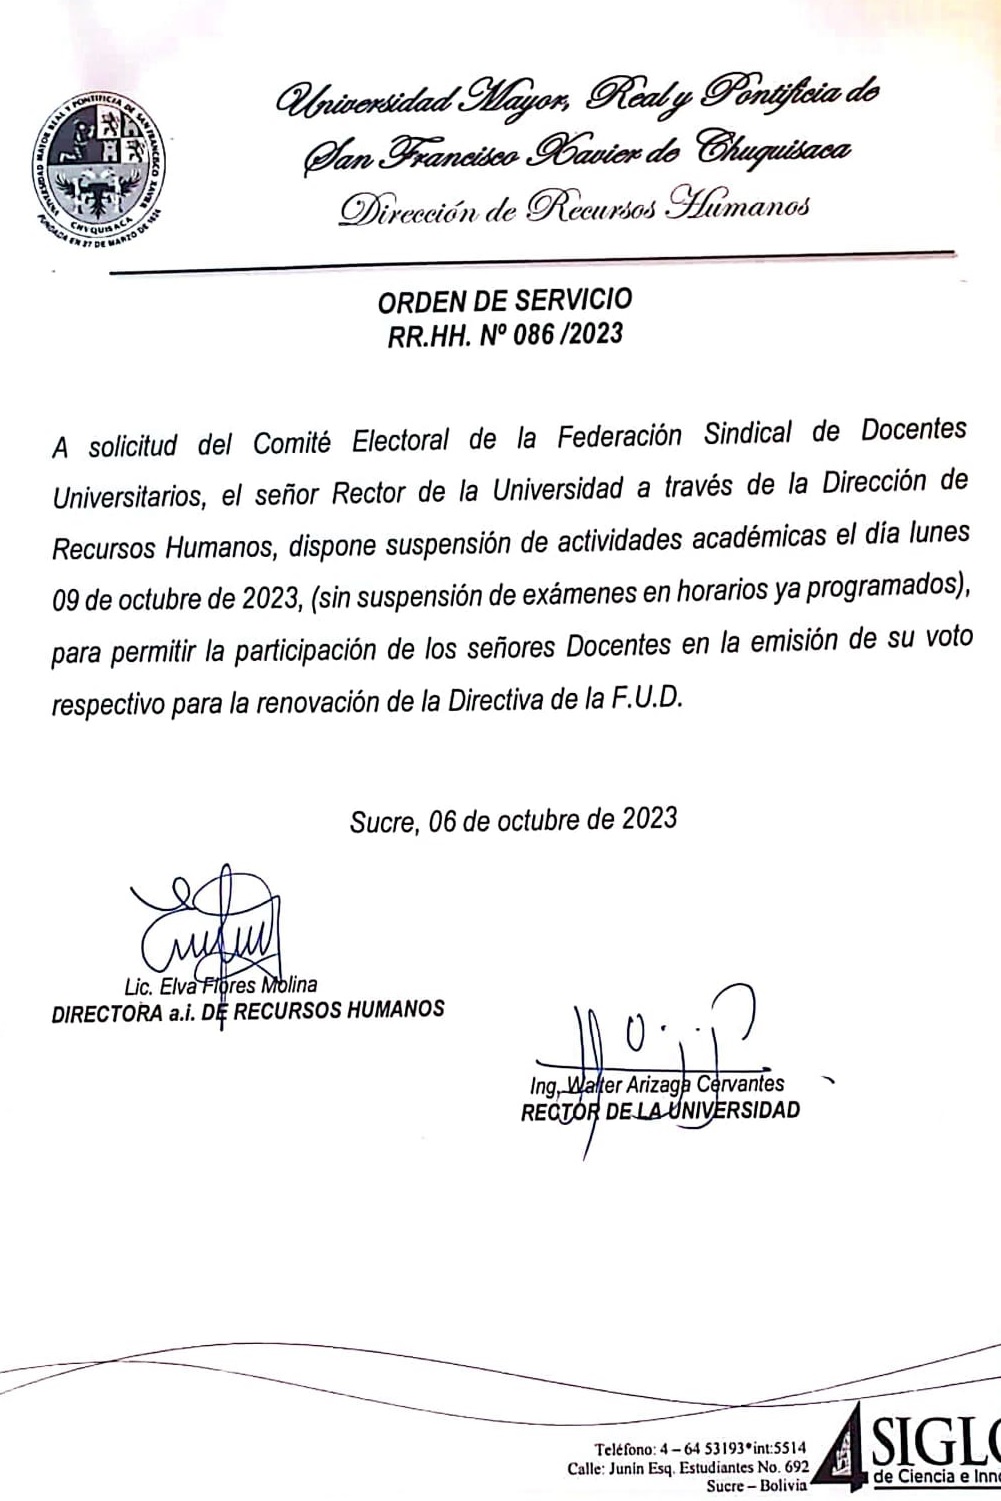 ORDEN DE SERVICIO RR.HH. Nº 086/2023, SUSPENSIÓN ACTIVIDADES ACADÉMICAS ELECCIÓN FUD.